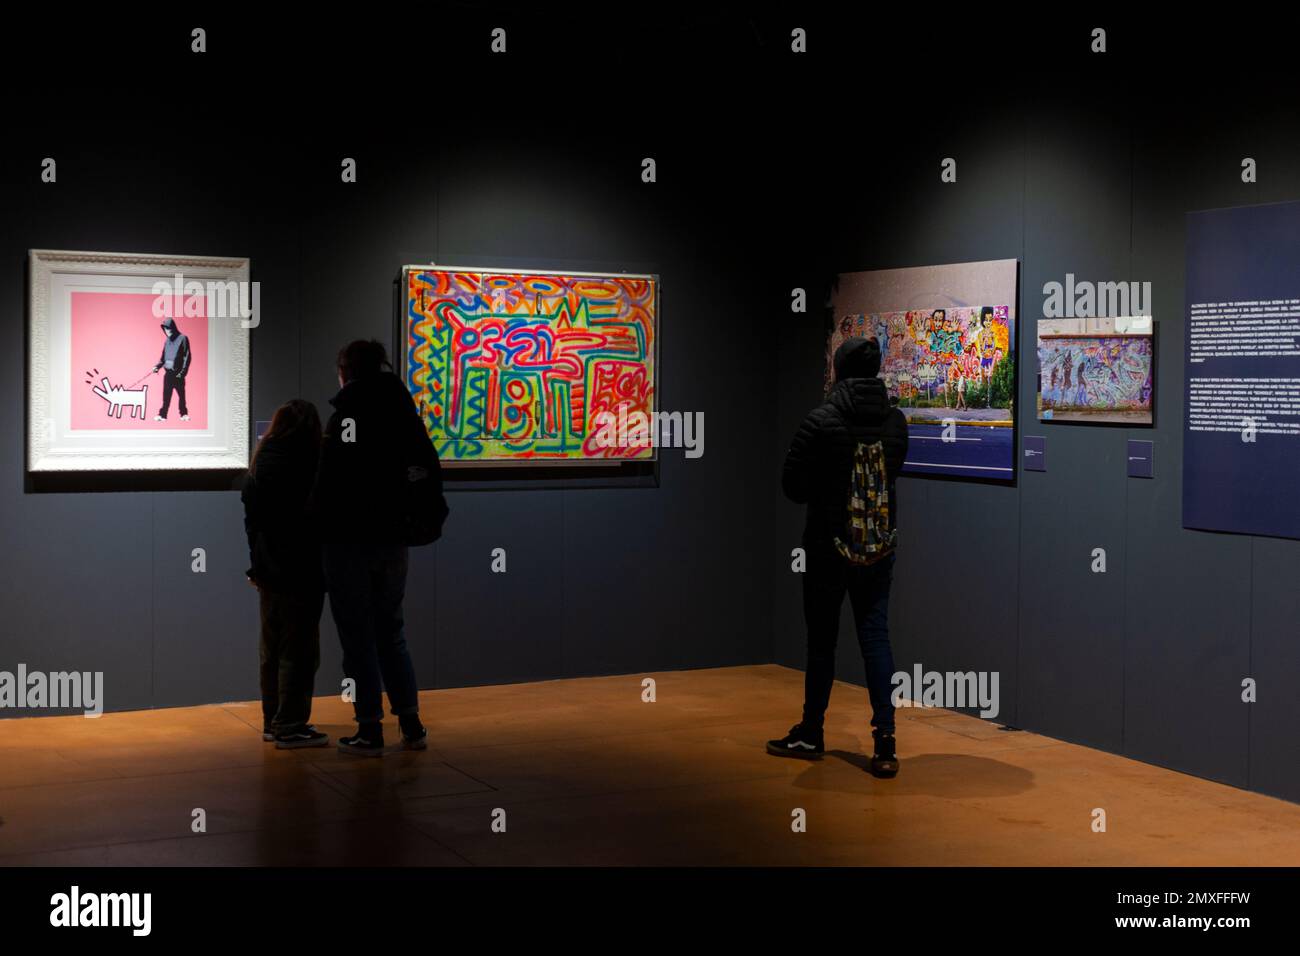 Trieste, Italie - 21 janvier 2023: Personnes regardant les œuvres d'art Keith Haring et Bansky. Exposition intitulée The Great Communicator Banksy, Salone degli Banque D'Images